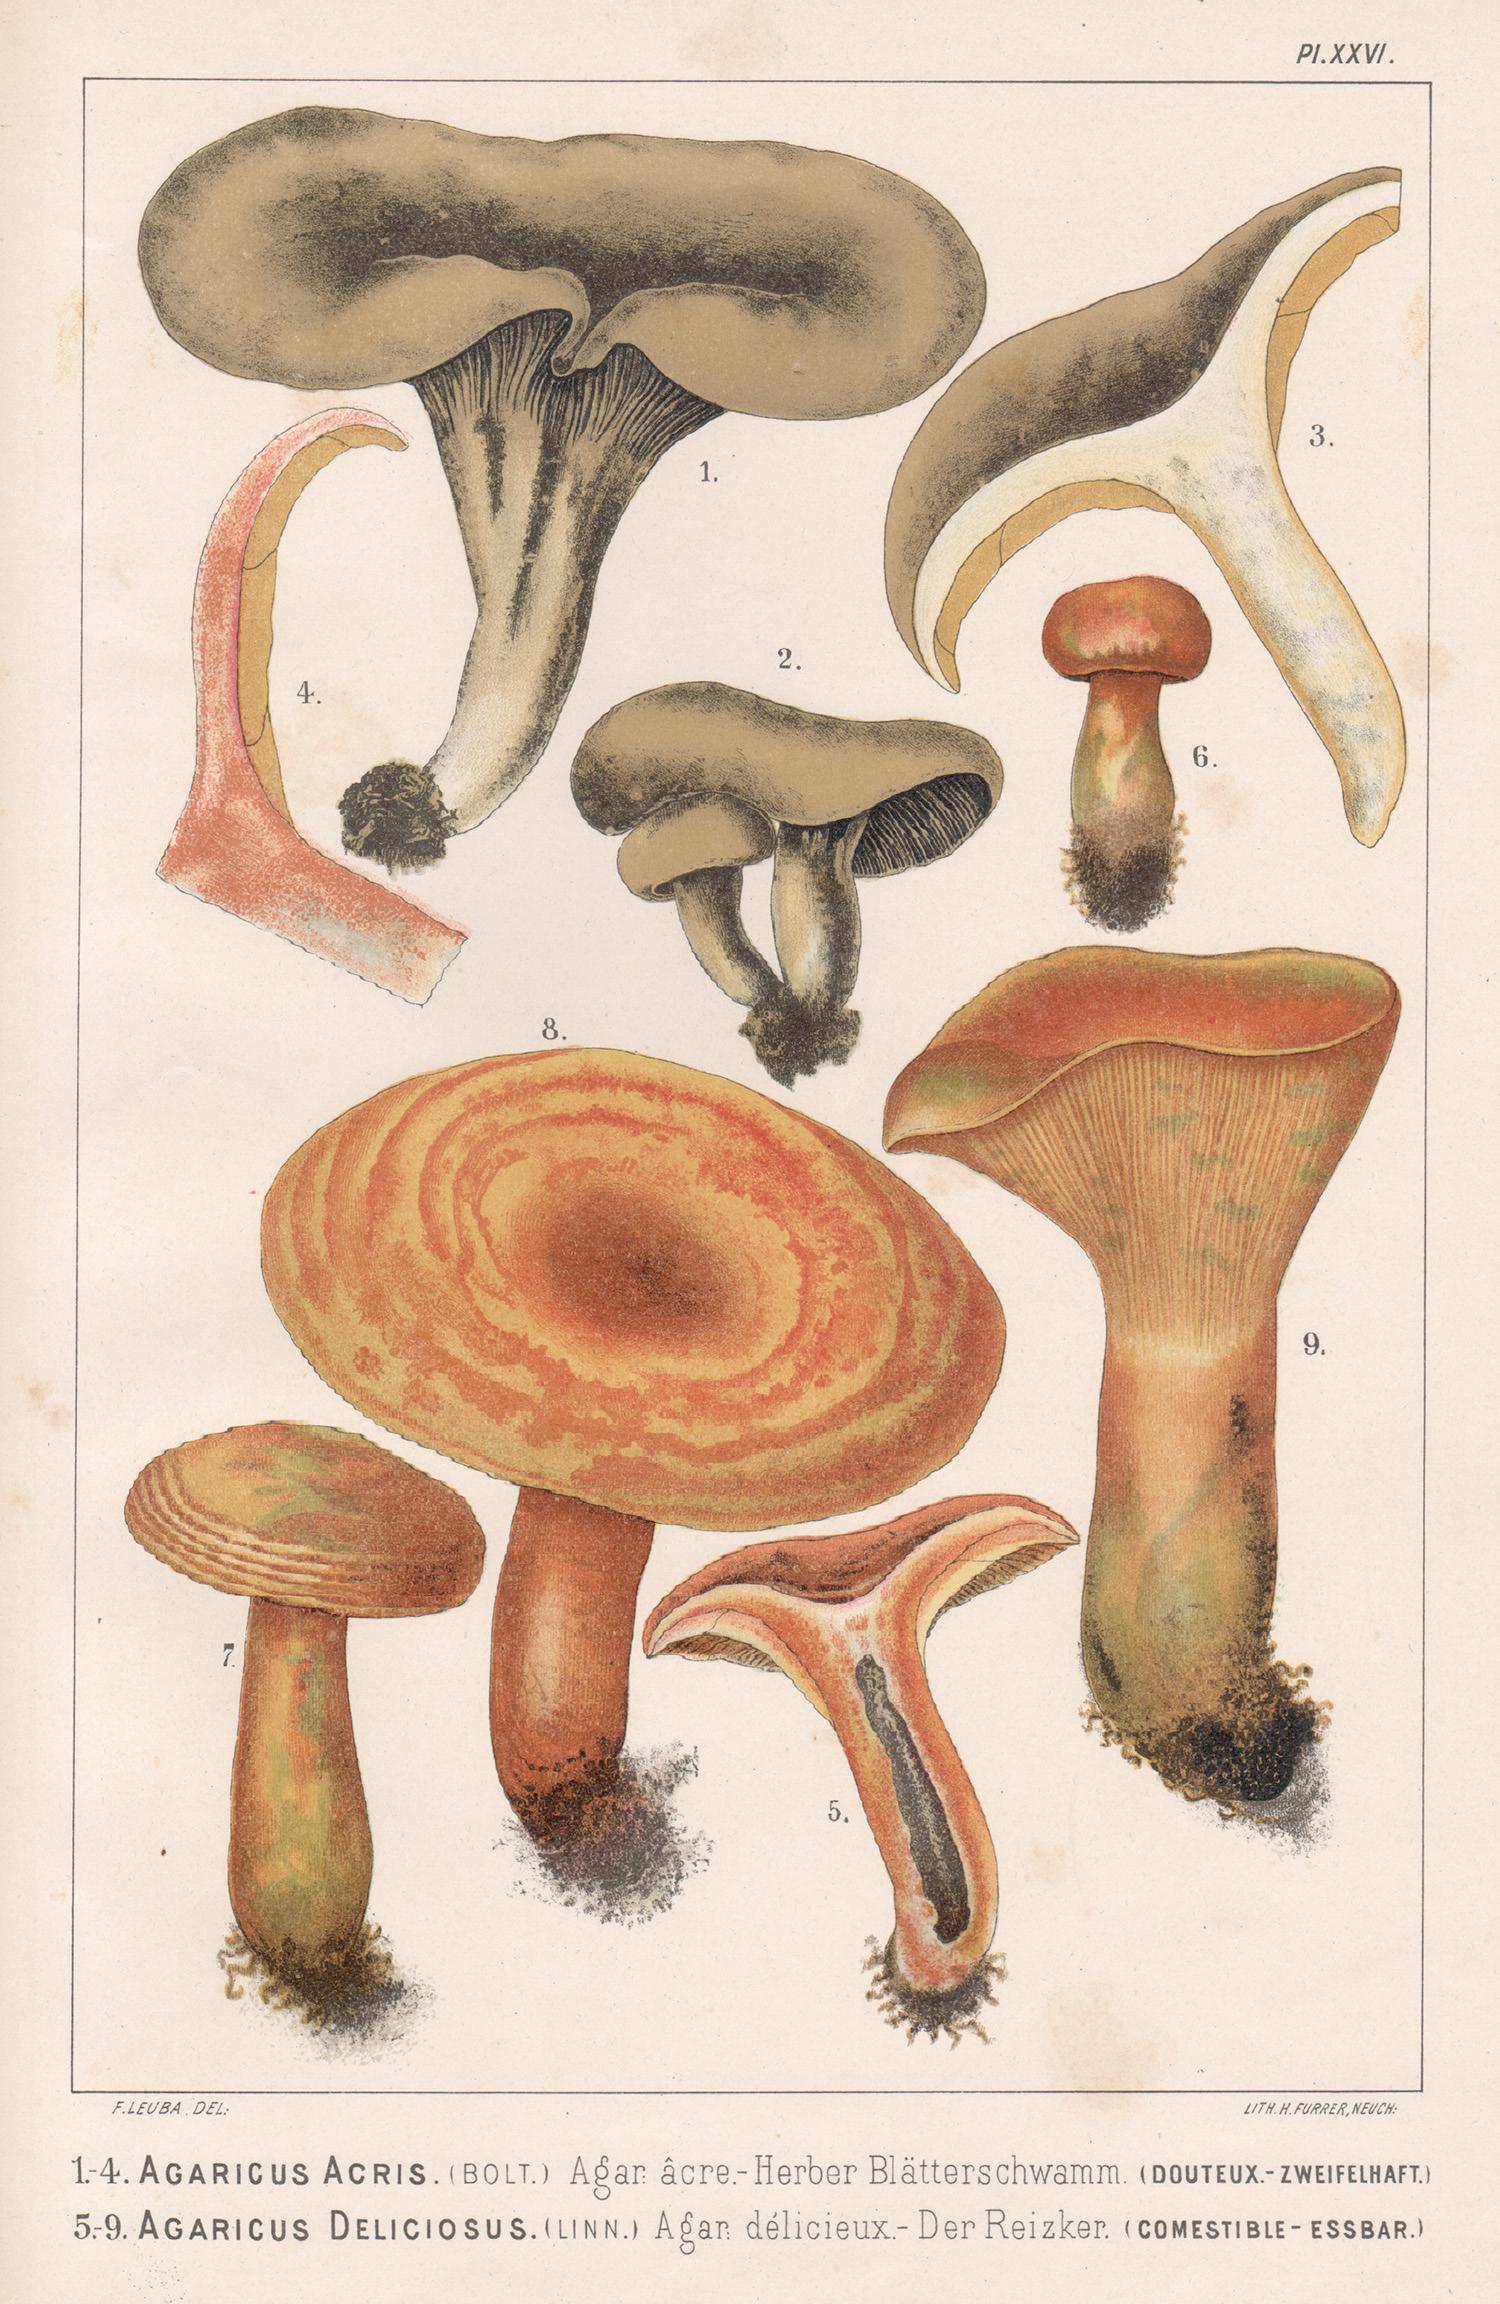 H Furrer after Fritz Leuba Print - Agaricus Acris / Deliciosus, Leuba antique mushroom fungi chromolithograph print